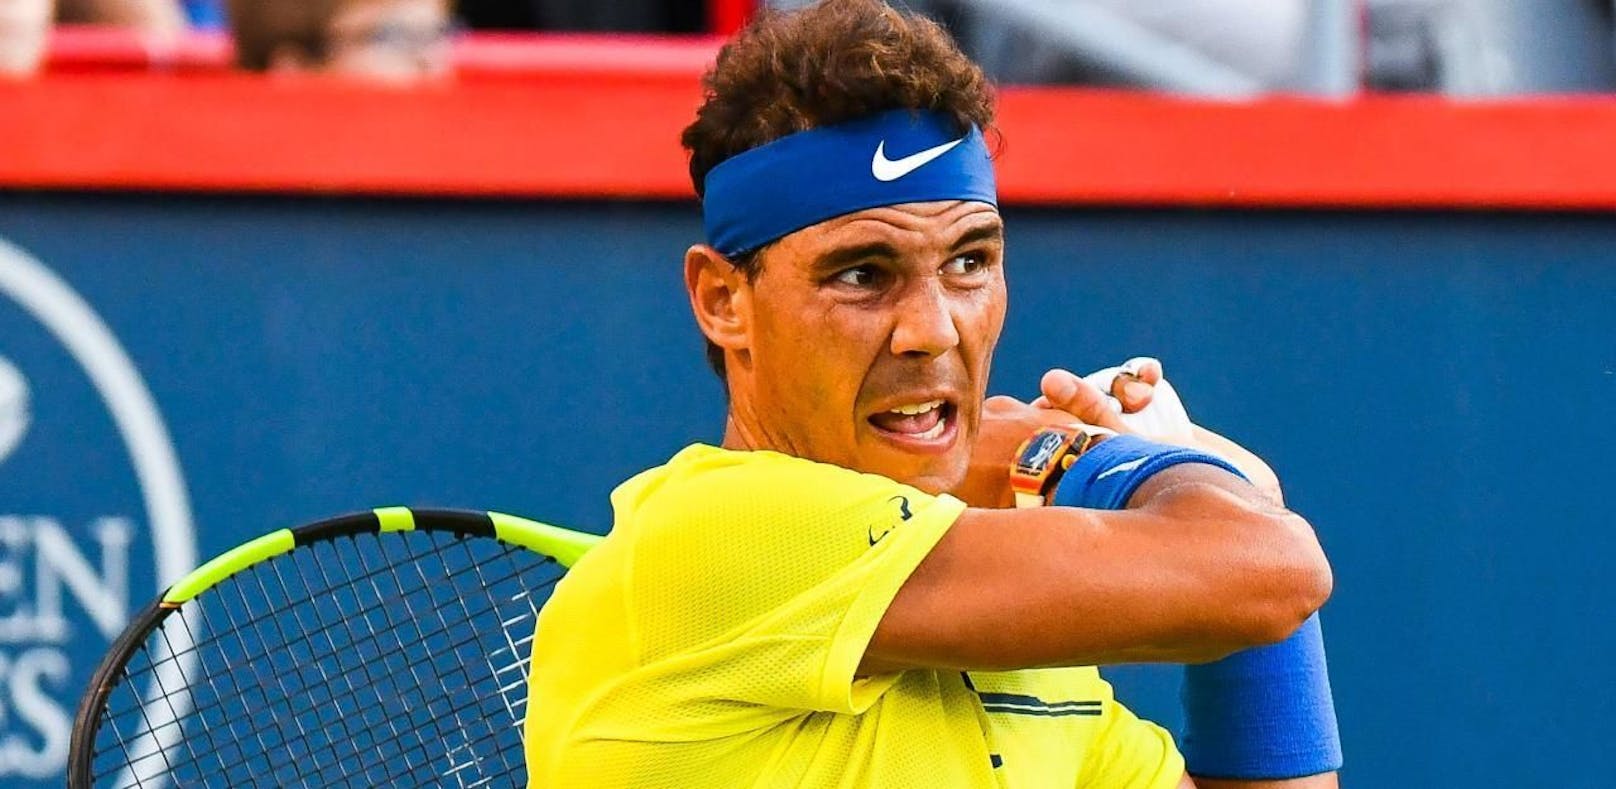 Teenager eliminiert Nadal – Federer bald die Nr. 1?